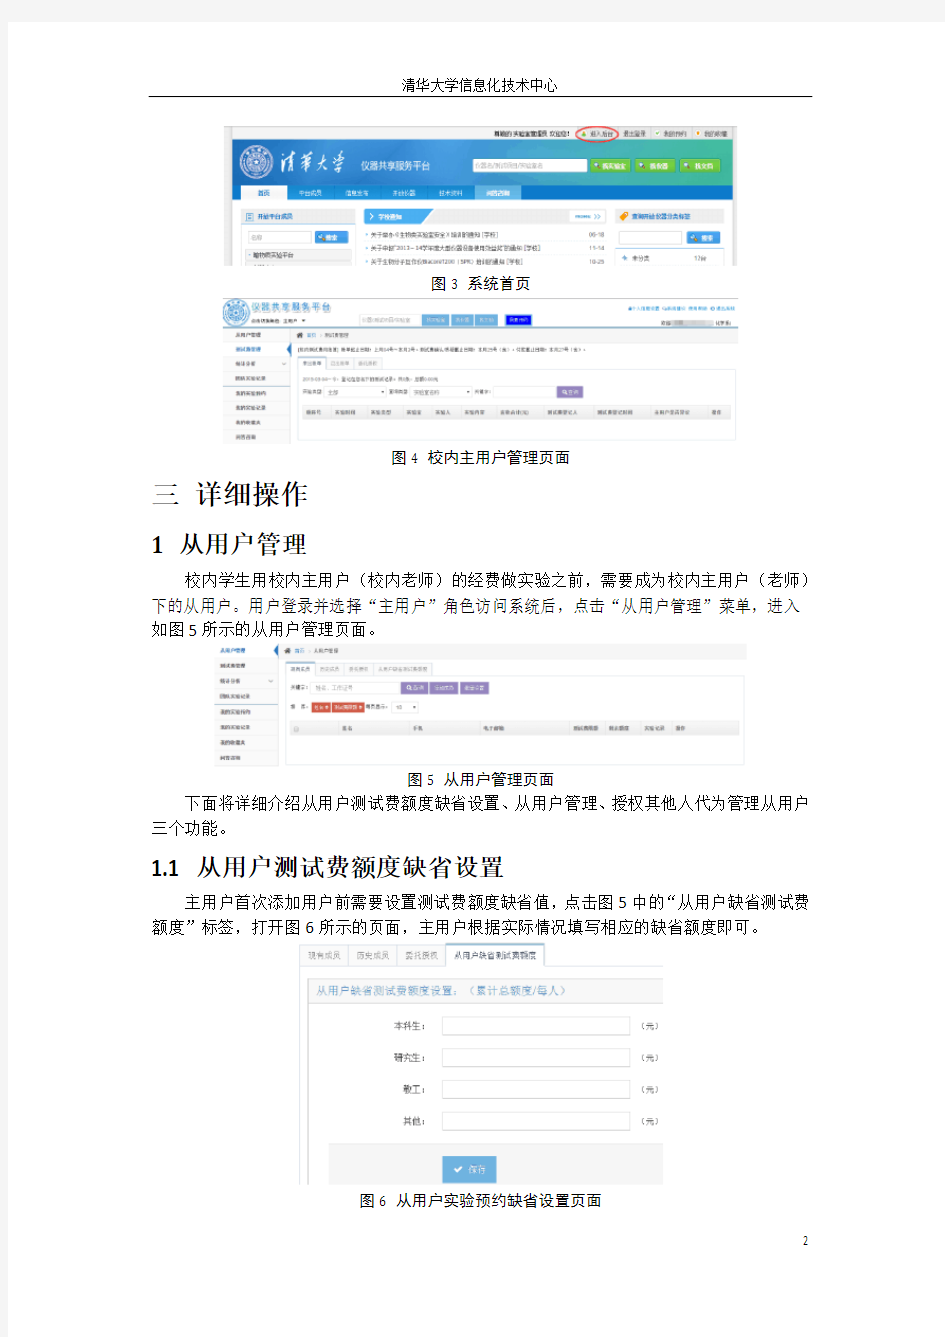 清华大学仪器共享平台校内主用户简明操作手册